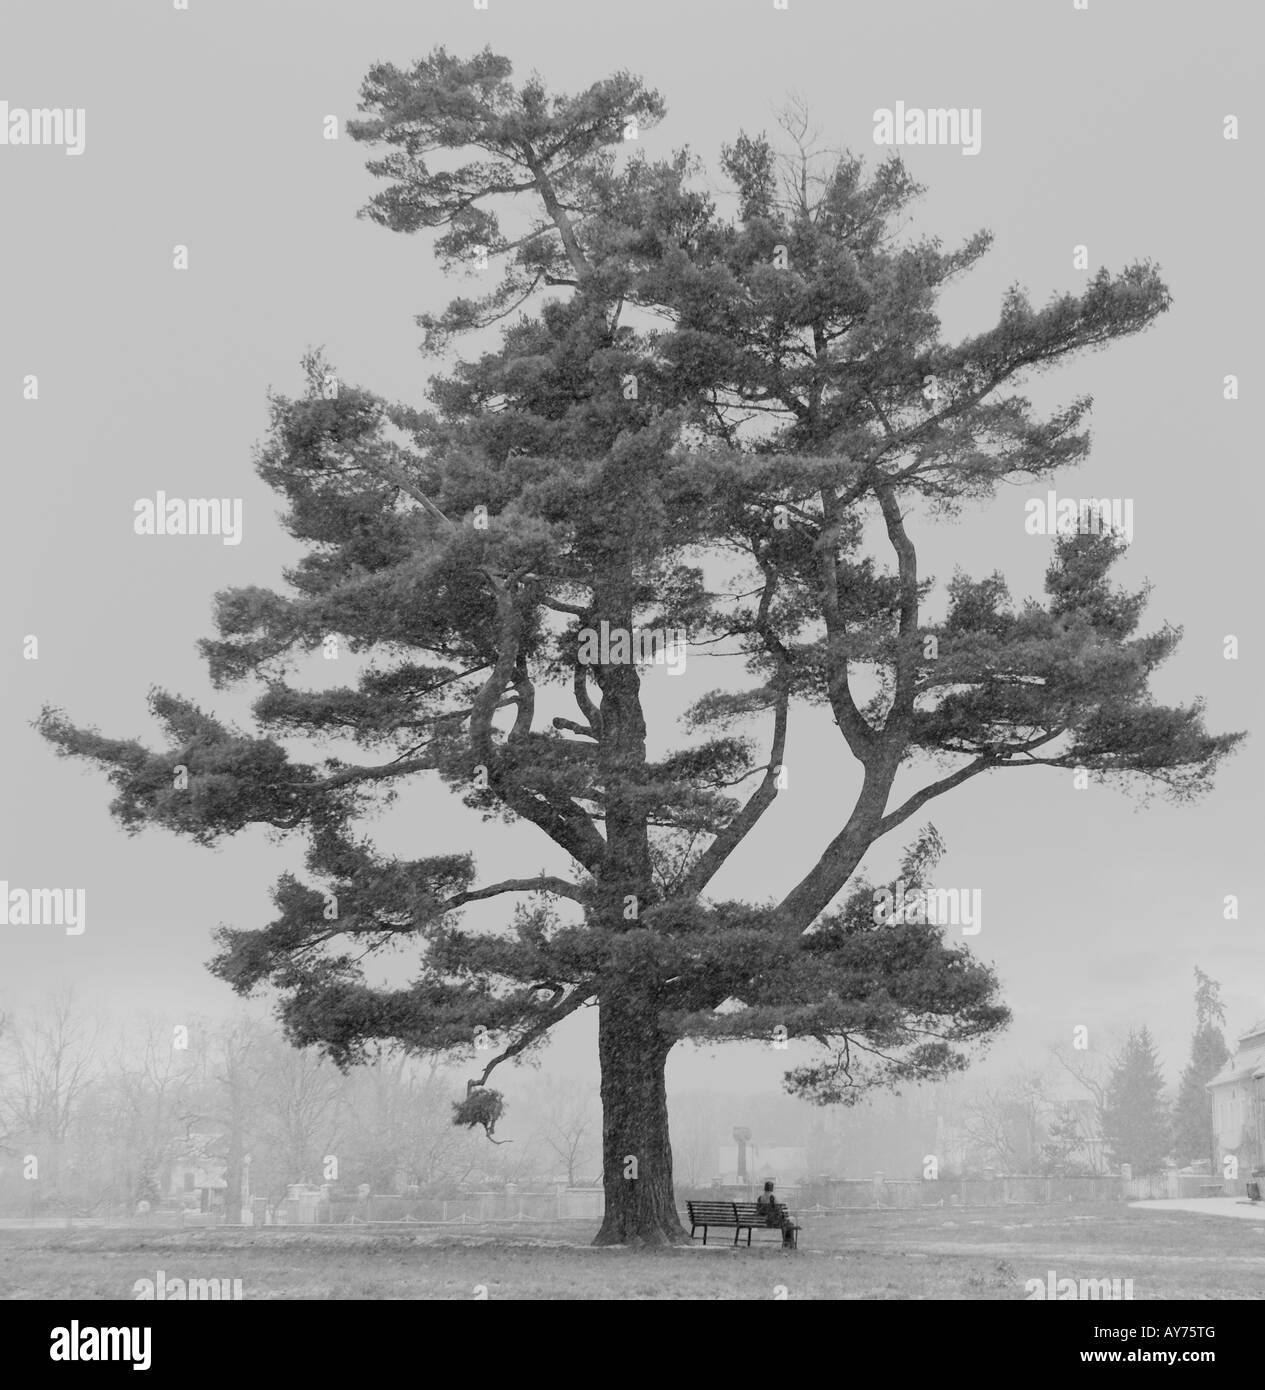 Un fino arte imagen de una mujer sentada debajo de un árbol. La escena cubierto con una niebla de la mañana, suave y muy vago. Foto de stock